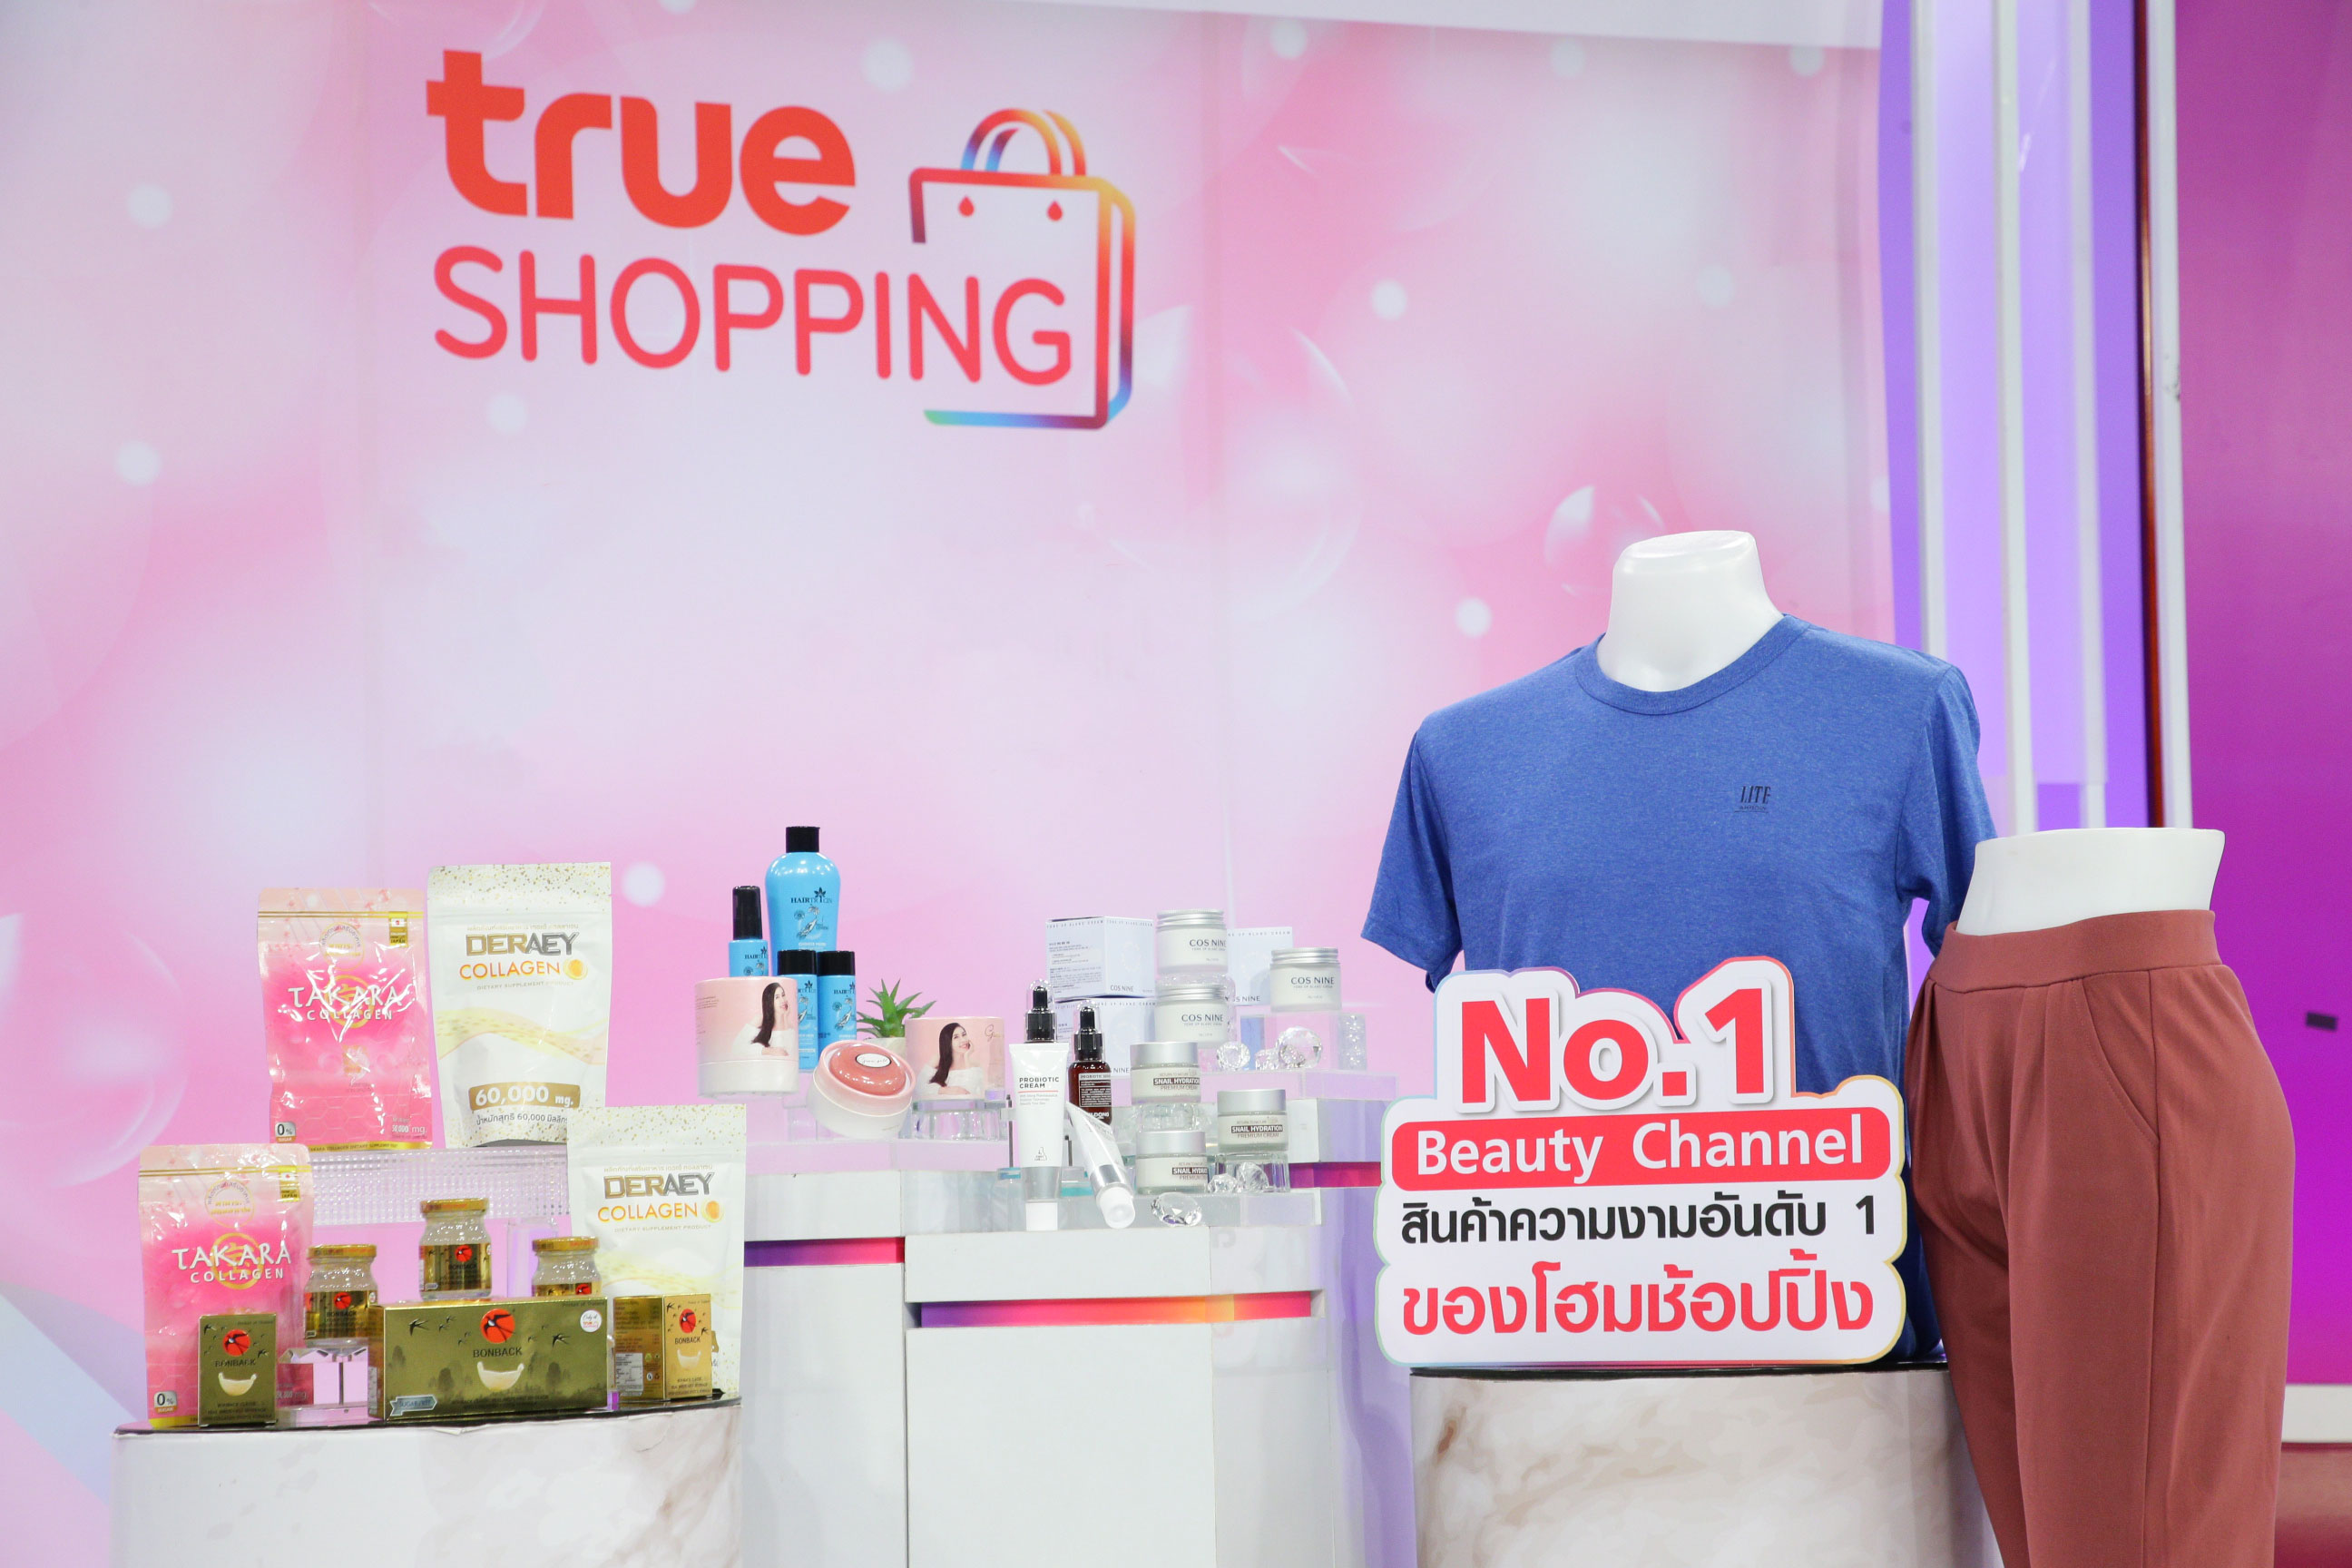 ทรูช้อปปิ้ง ปลื้ม สินค้าความงามและสุขภาพ ครองใจนักช้อปไทย ดันยอดโต 50%